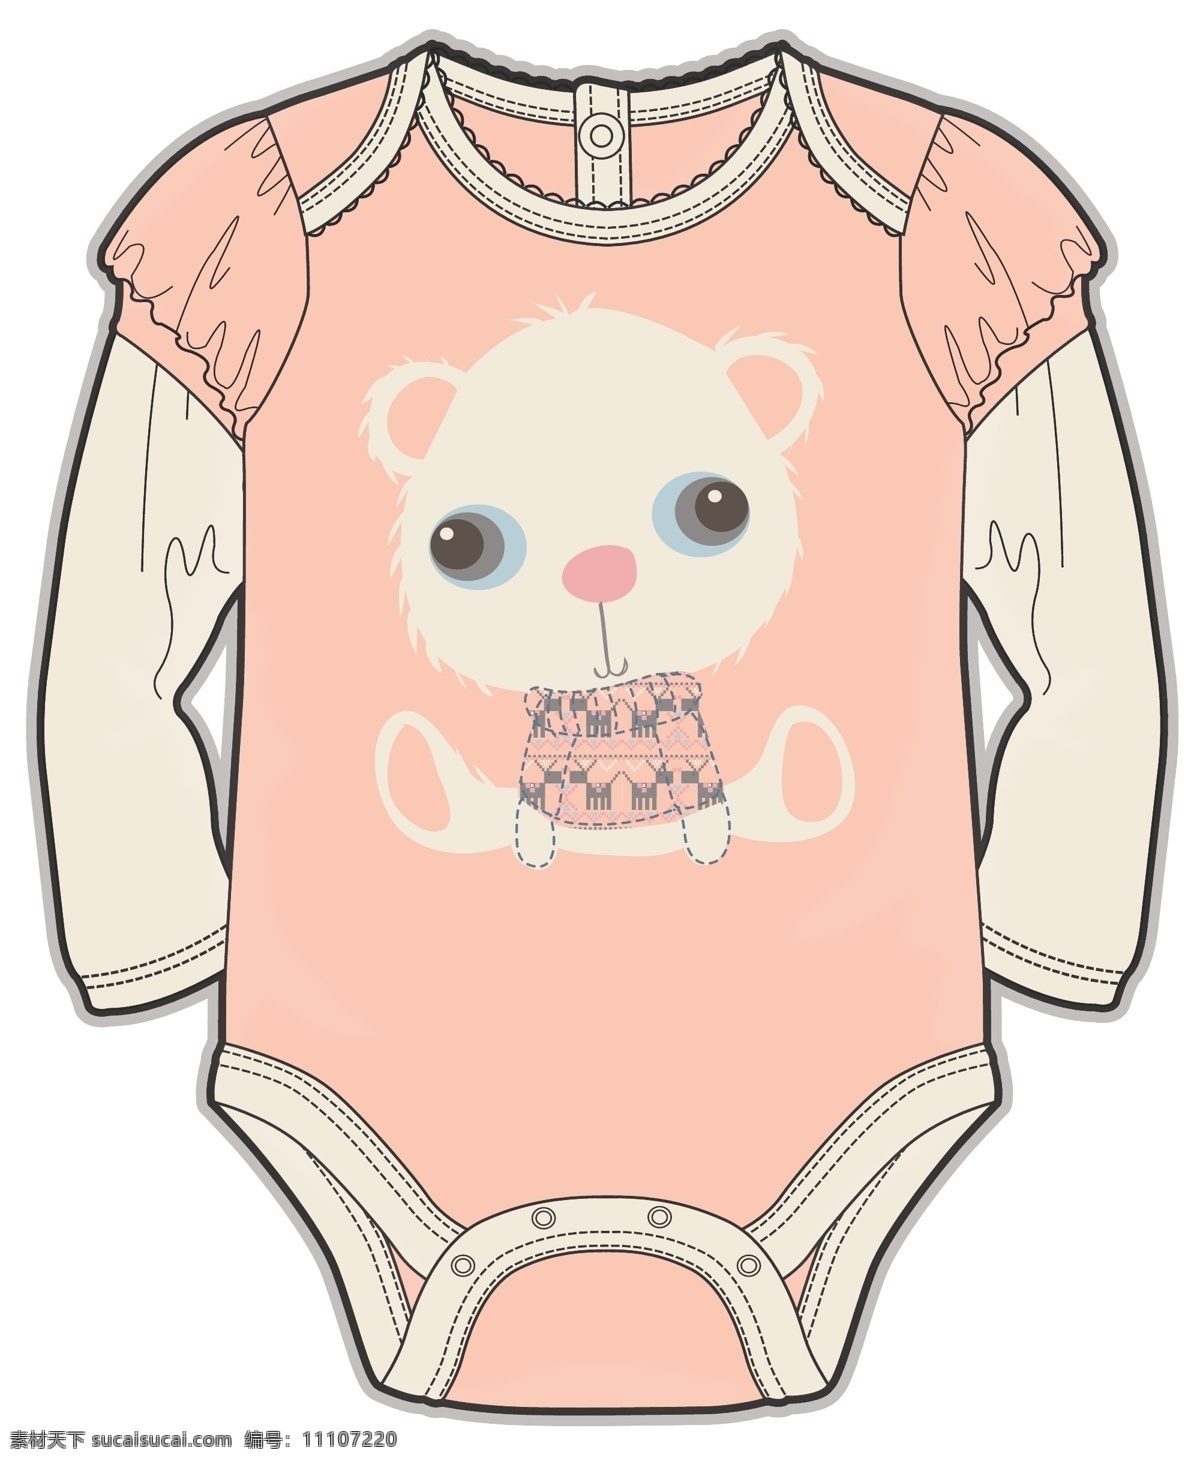 衣裤 连体 女 宝宝 服装设计 彩色 稿件 矢量 粉色 动物 假两件 婴儿 小宝宝 服装 女装 源文件